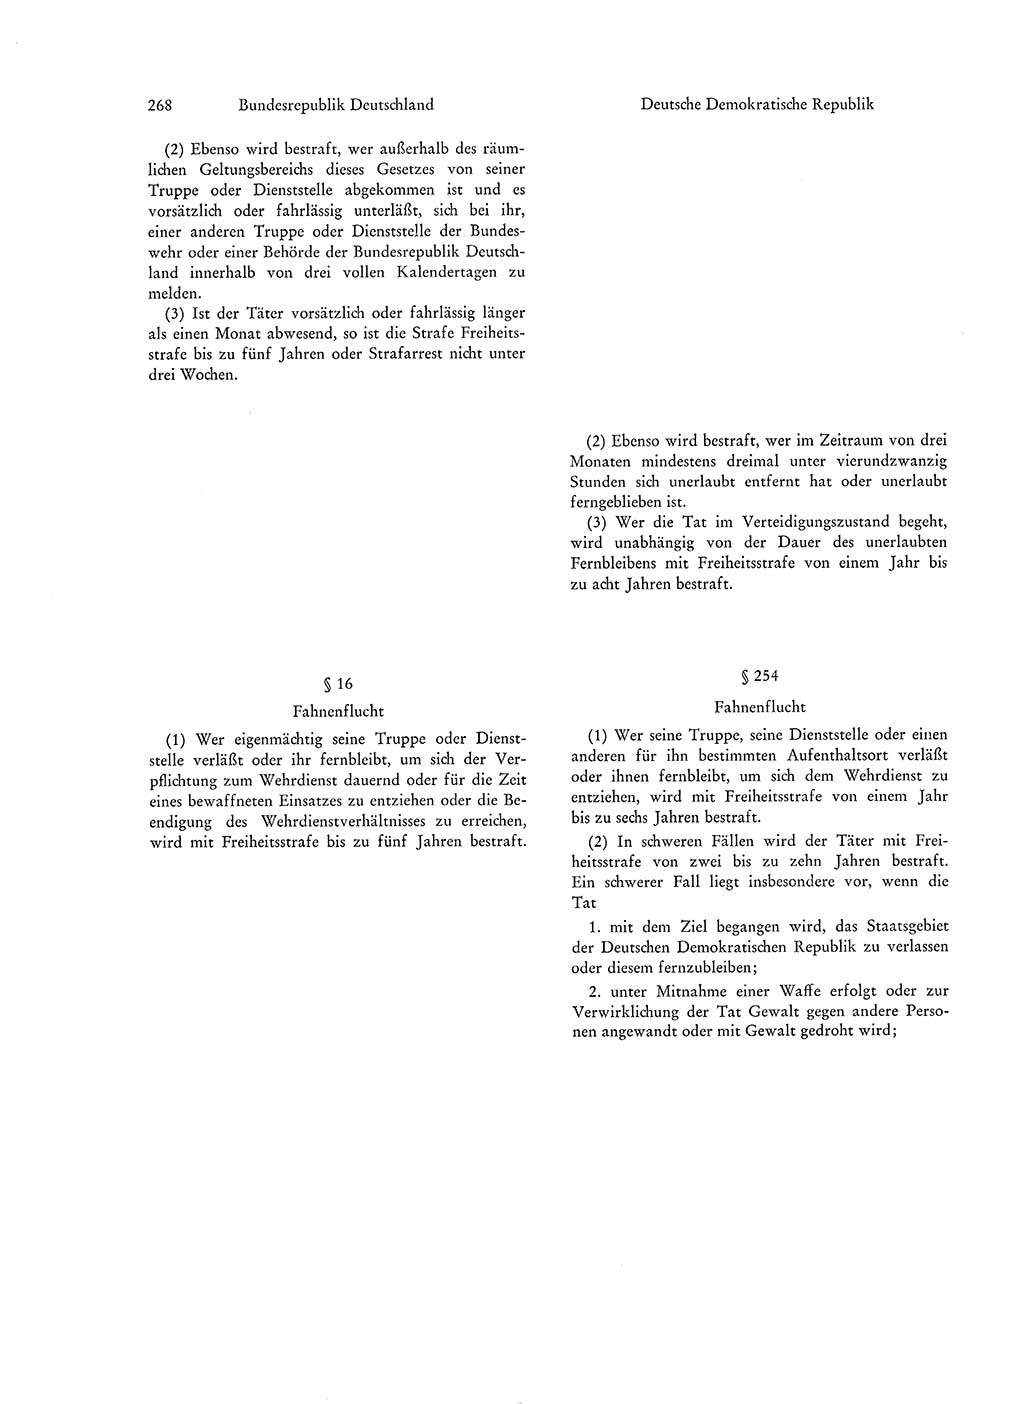 Strafgesetzgebung in Deutschland [Bundesrepublik Deutschland (BRD) und Deutsche Demokratische Republik (DDR)] 1972, Seite 268 (Str.-Ges. Dtl. StGB BRD DDR 1972, S. 268)